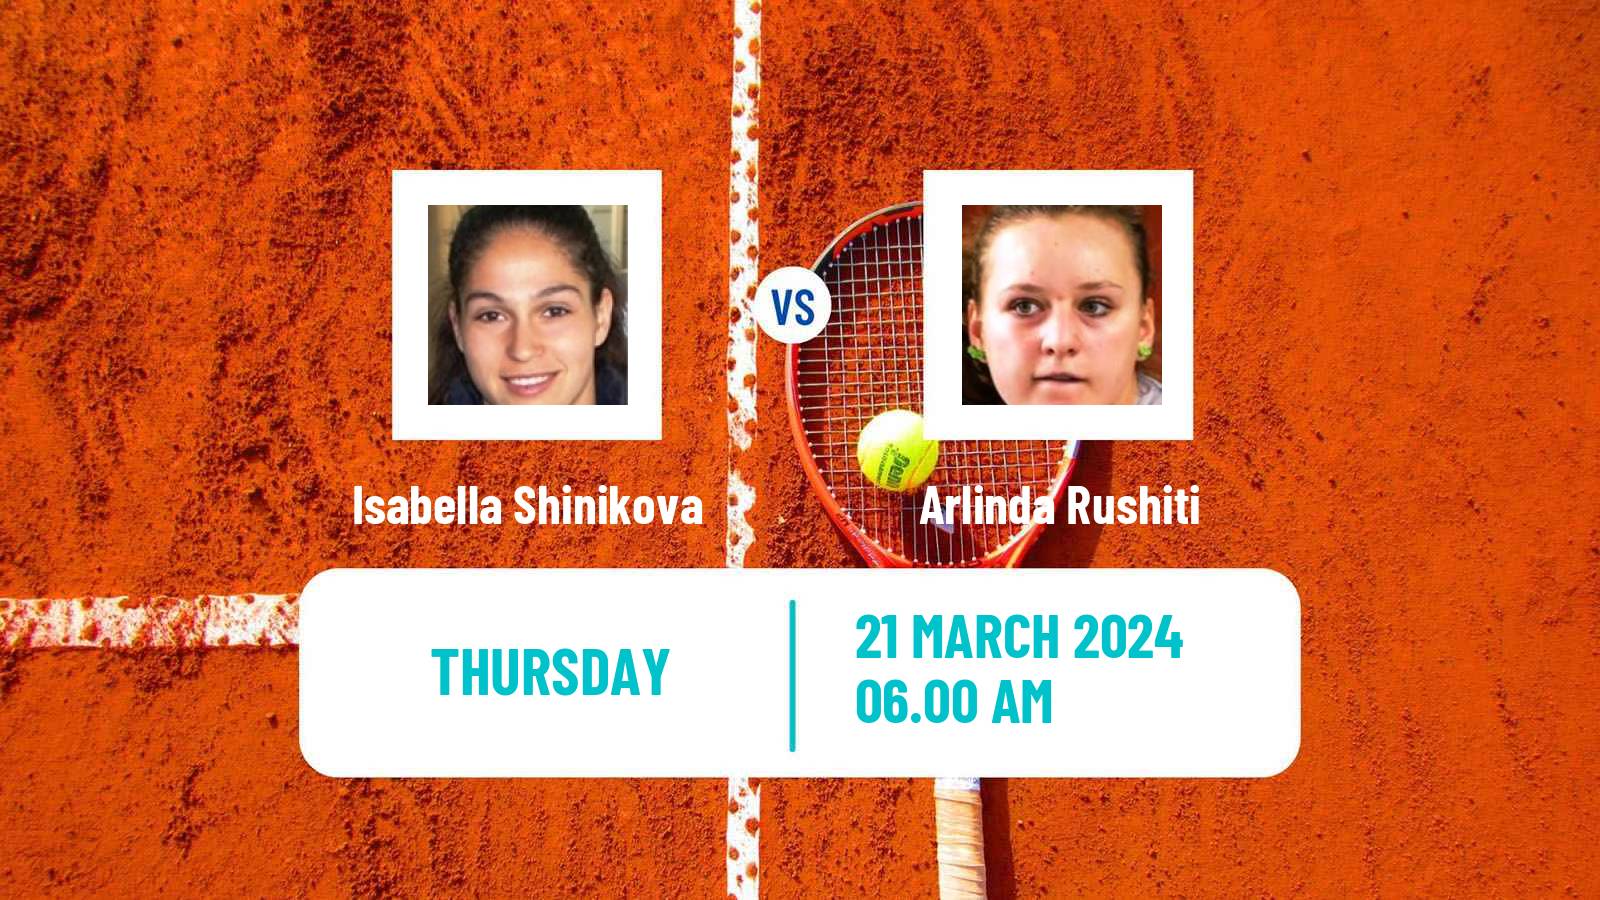 Tennis ITF W15 Monastir 10 Women Isabella Shinikova - Arlinda Rushiti